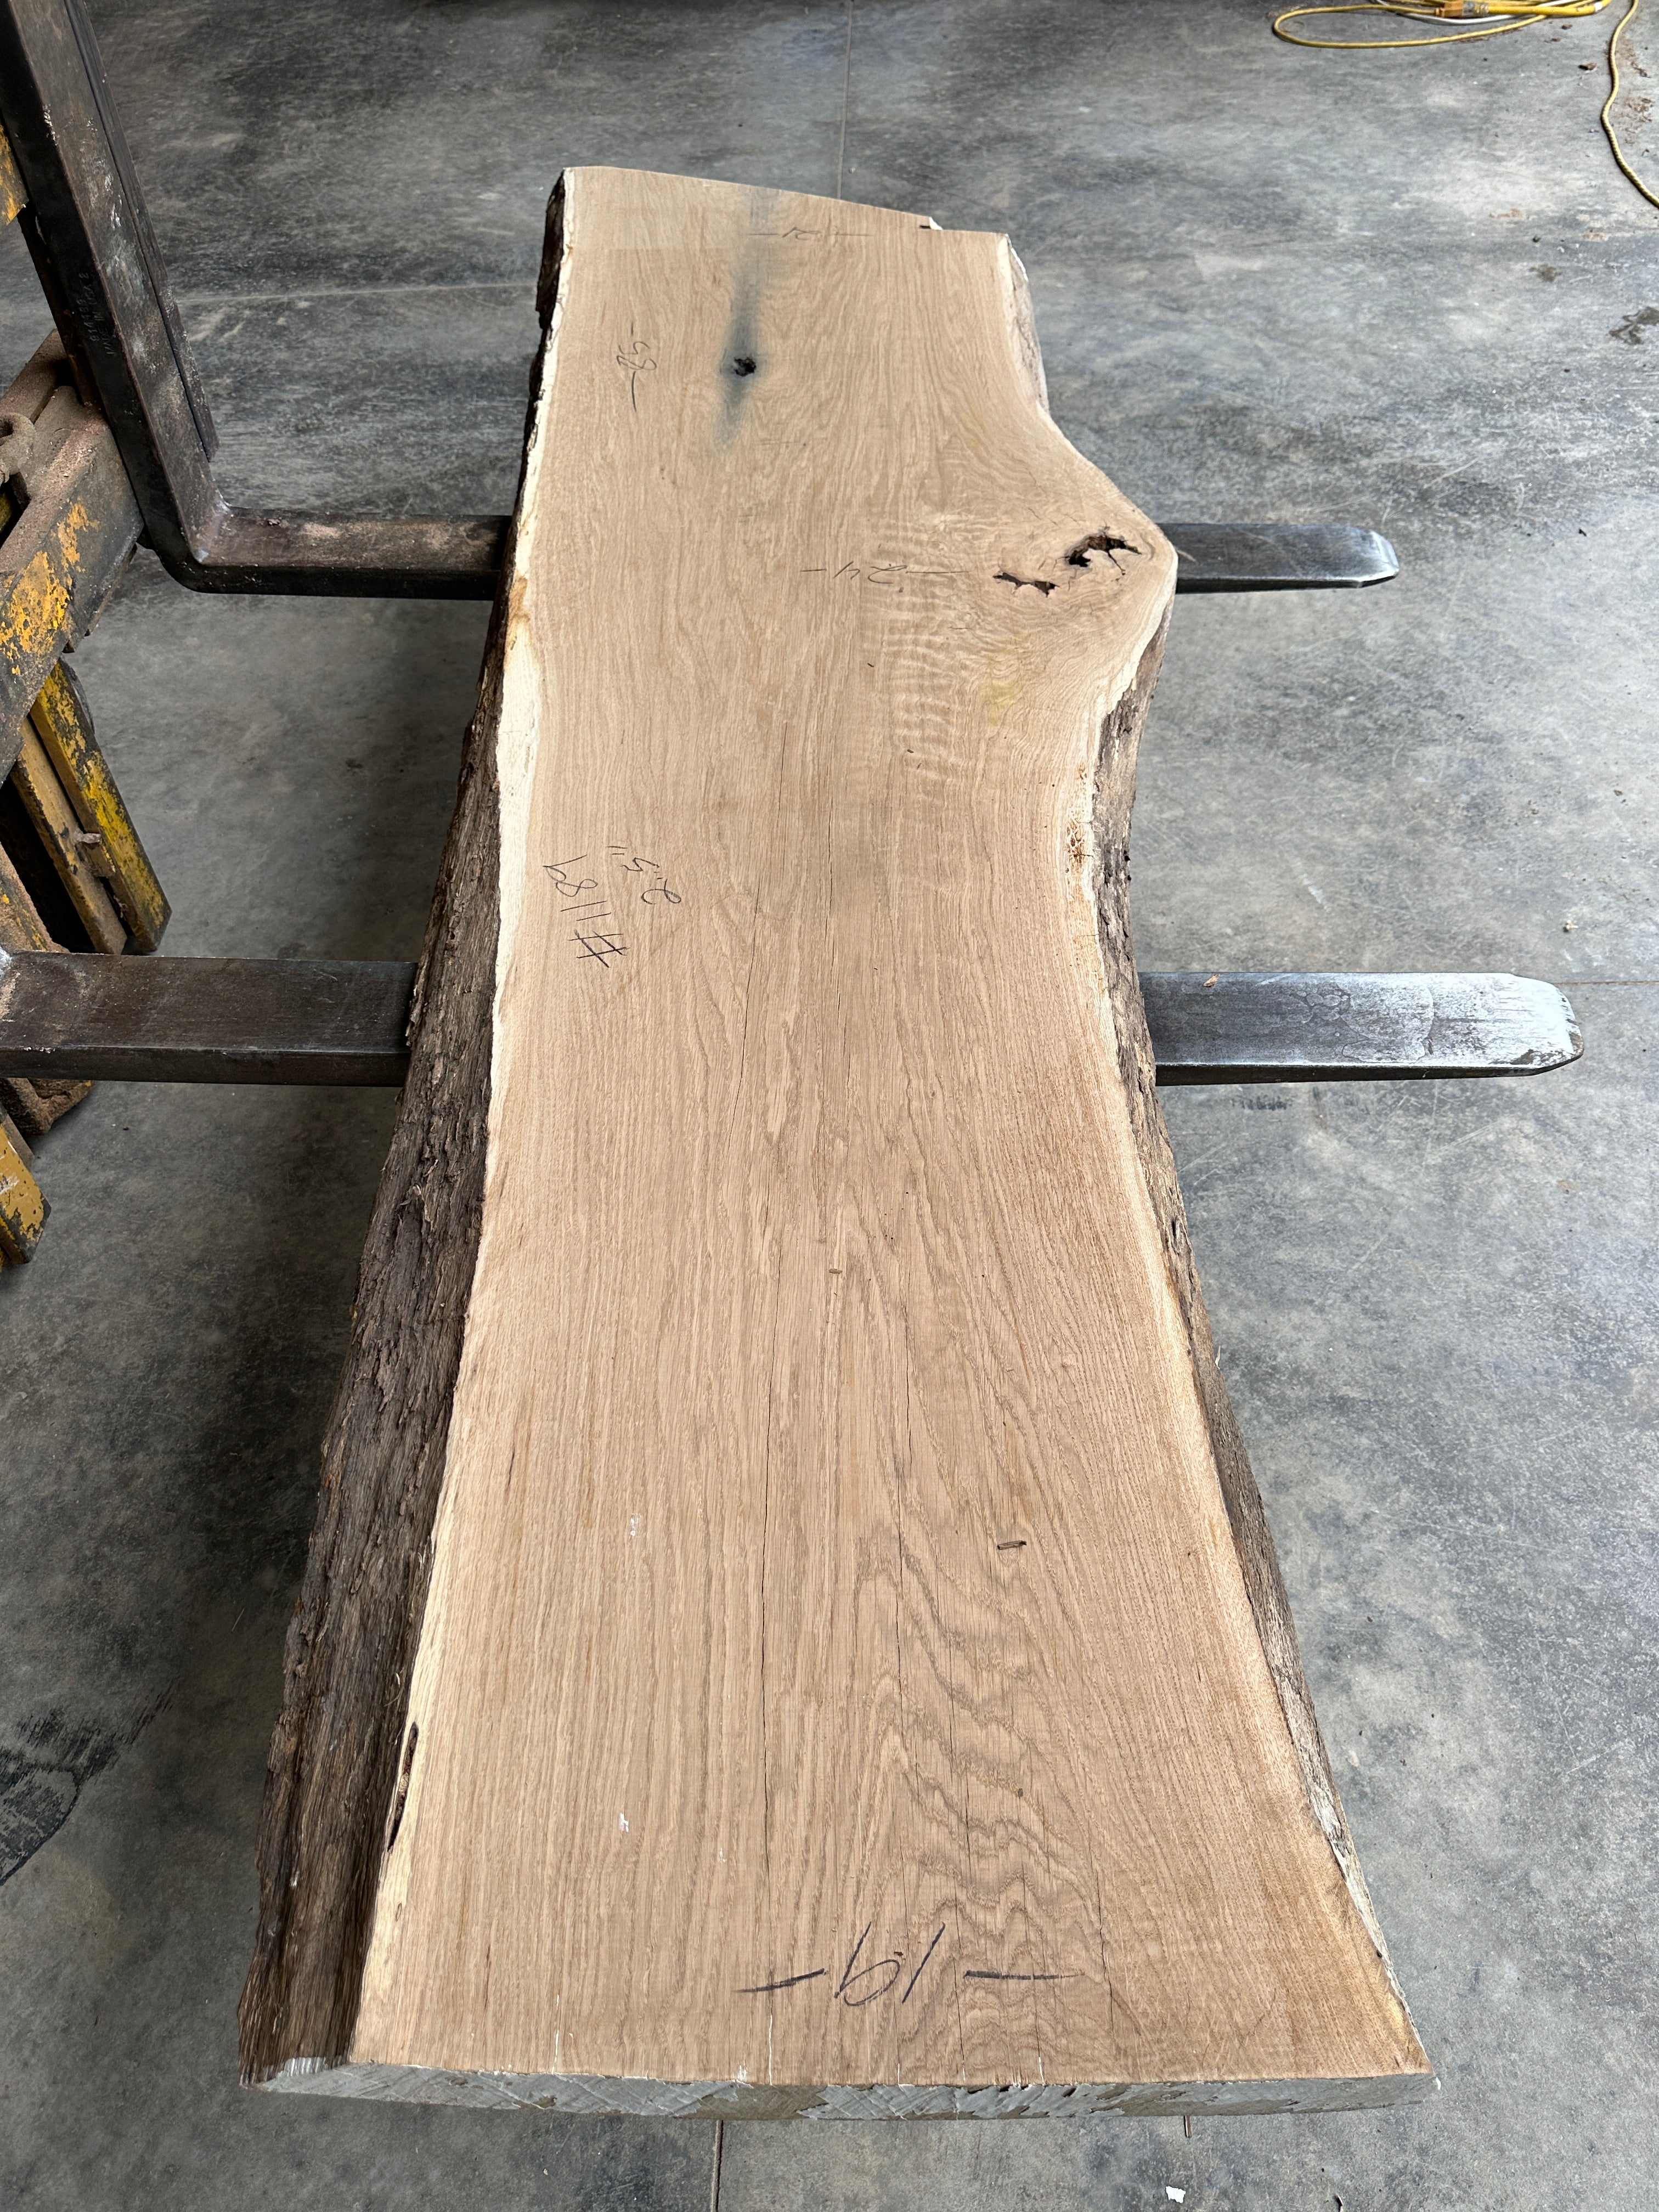 White Oak Lumber Slab 